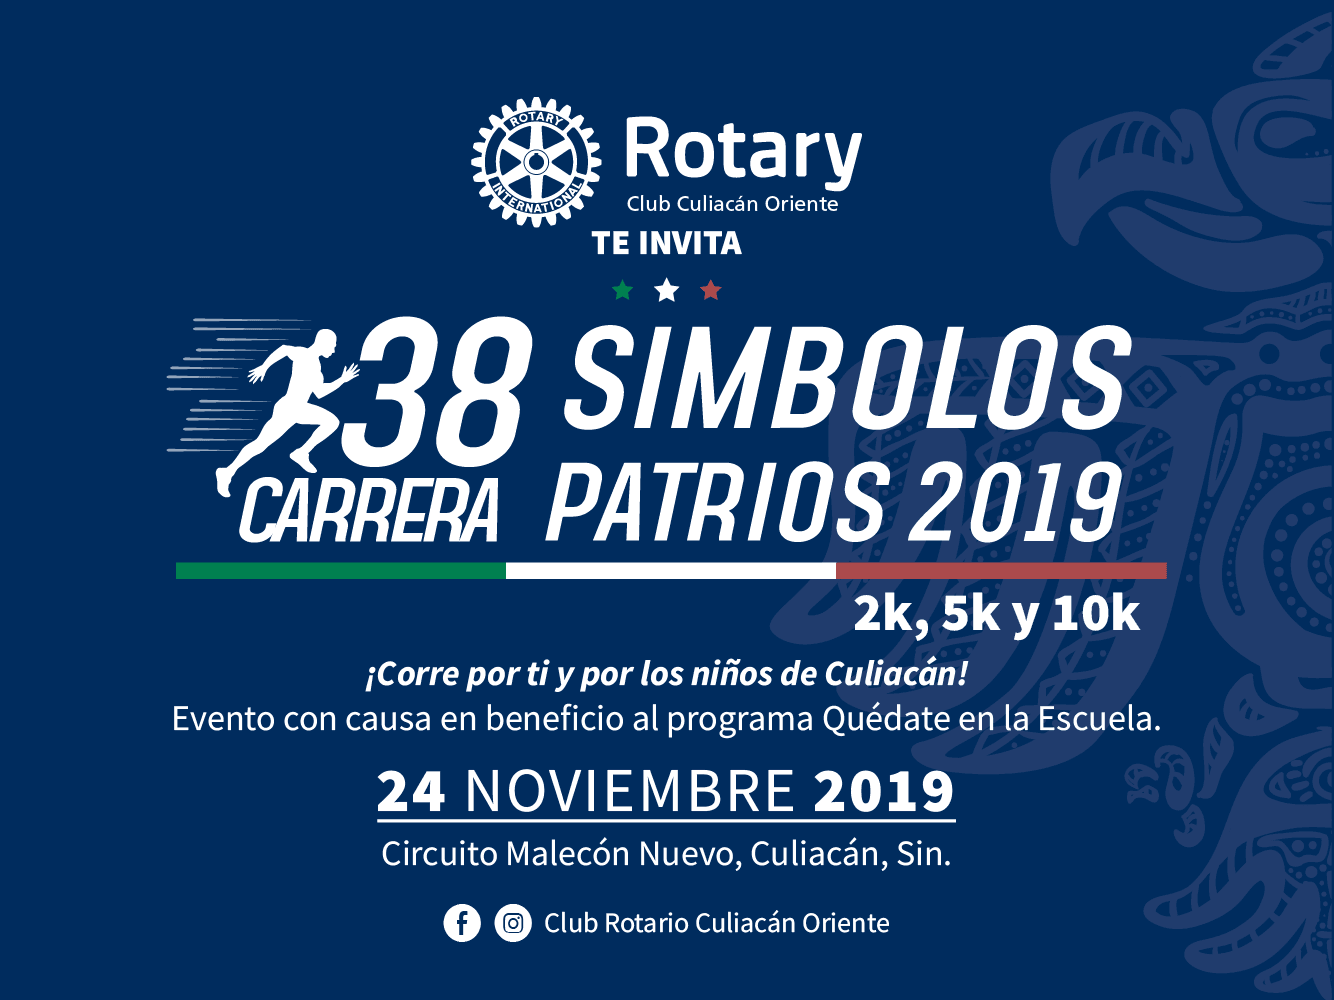 38 Carrera Símbolos Patrios 2019 - Club Rotario Culiacán Oriente | Raudor ¡Rompe tu propio récord!